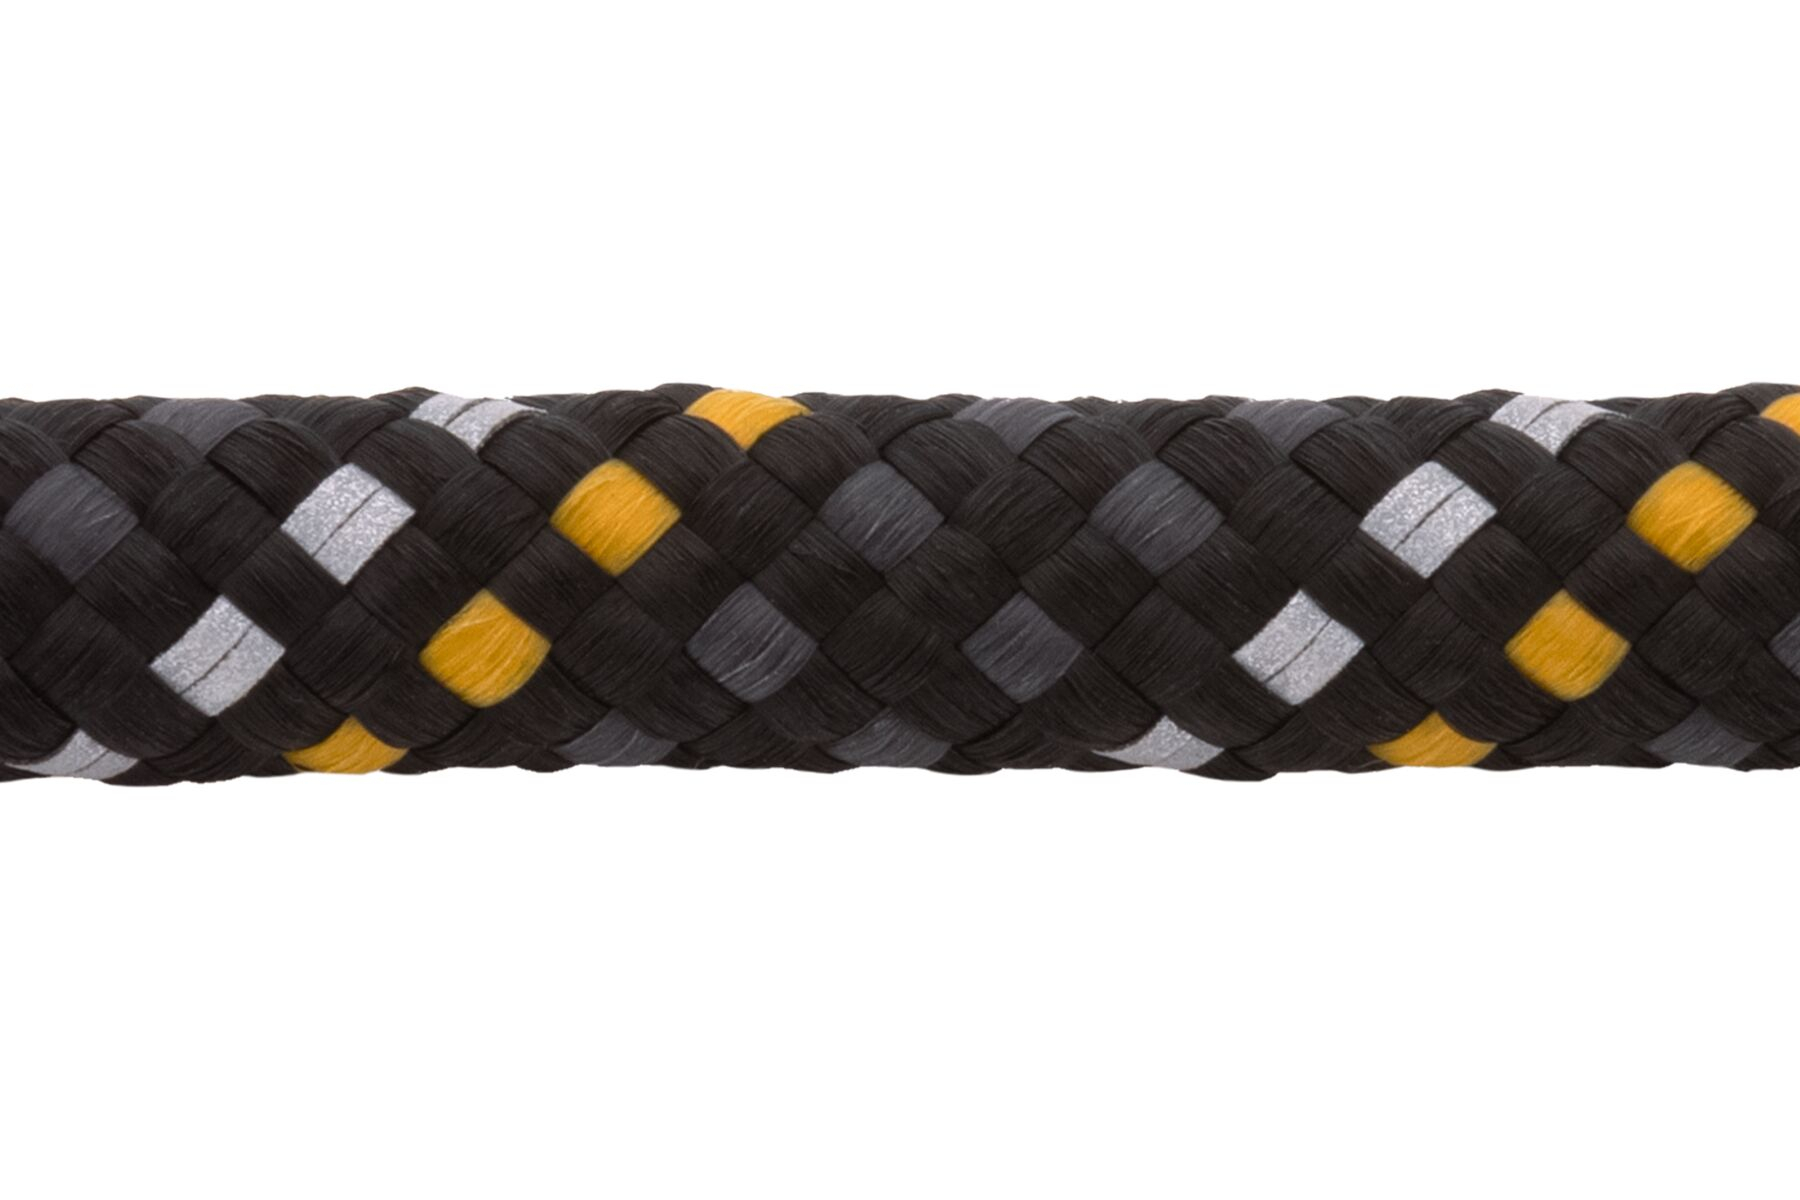 Collare Knot-a-collar di Ruffwear Obsidian Black - diverse taglie disponibili